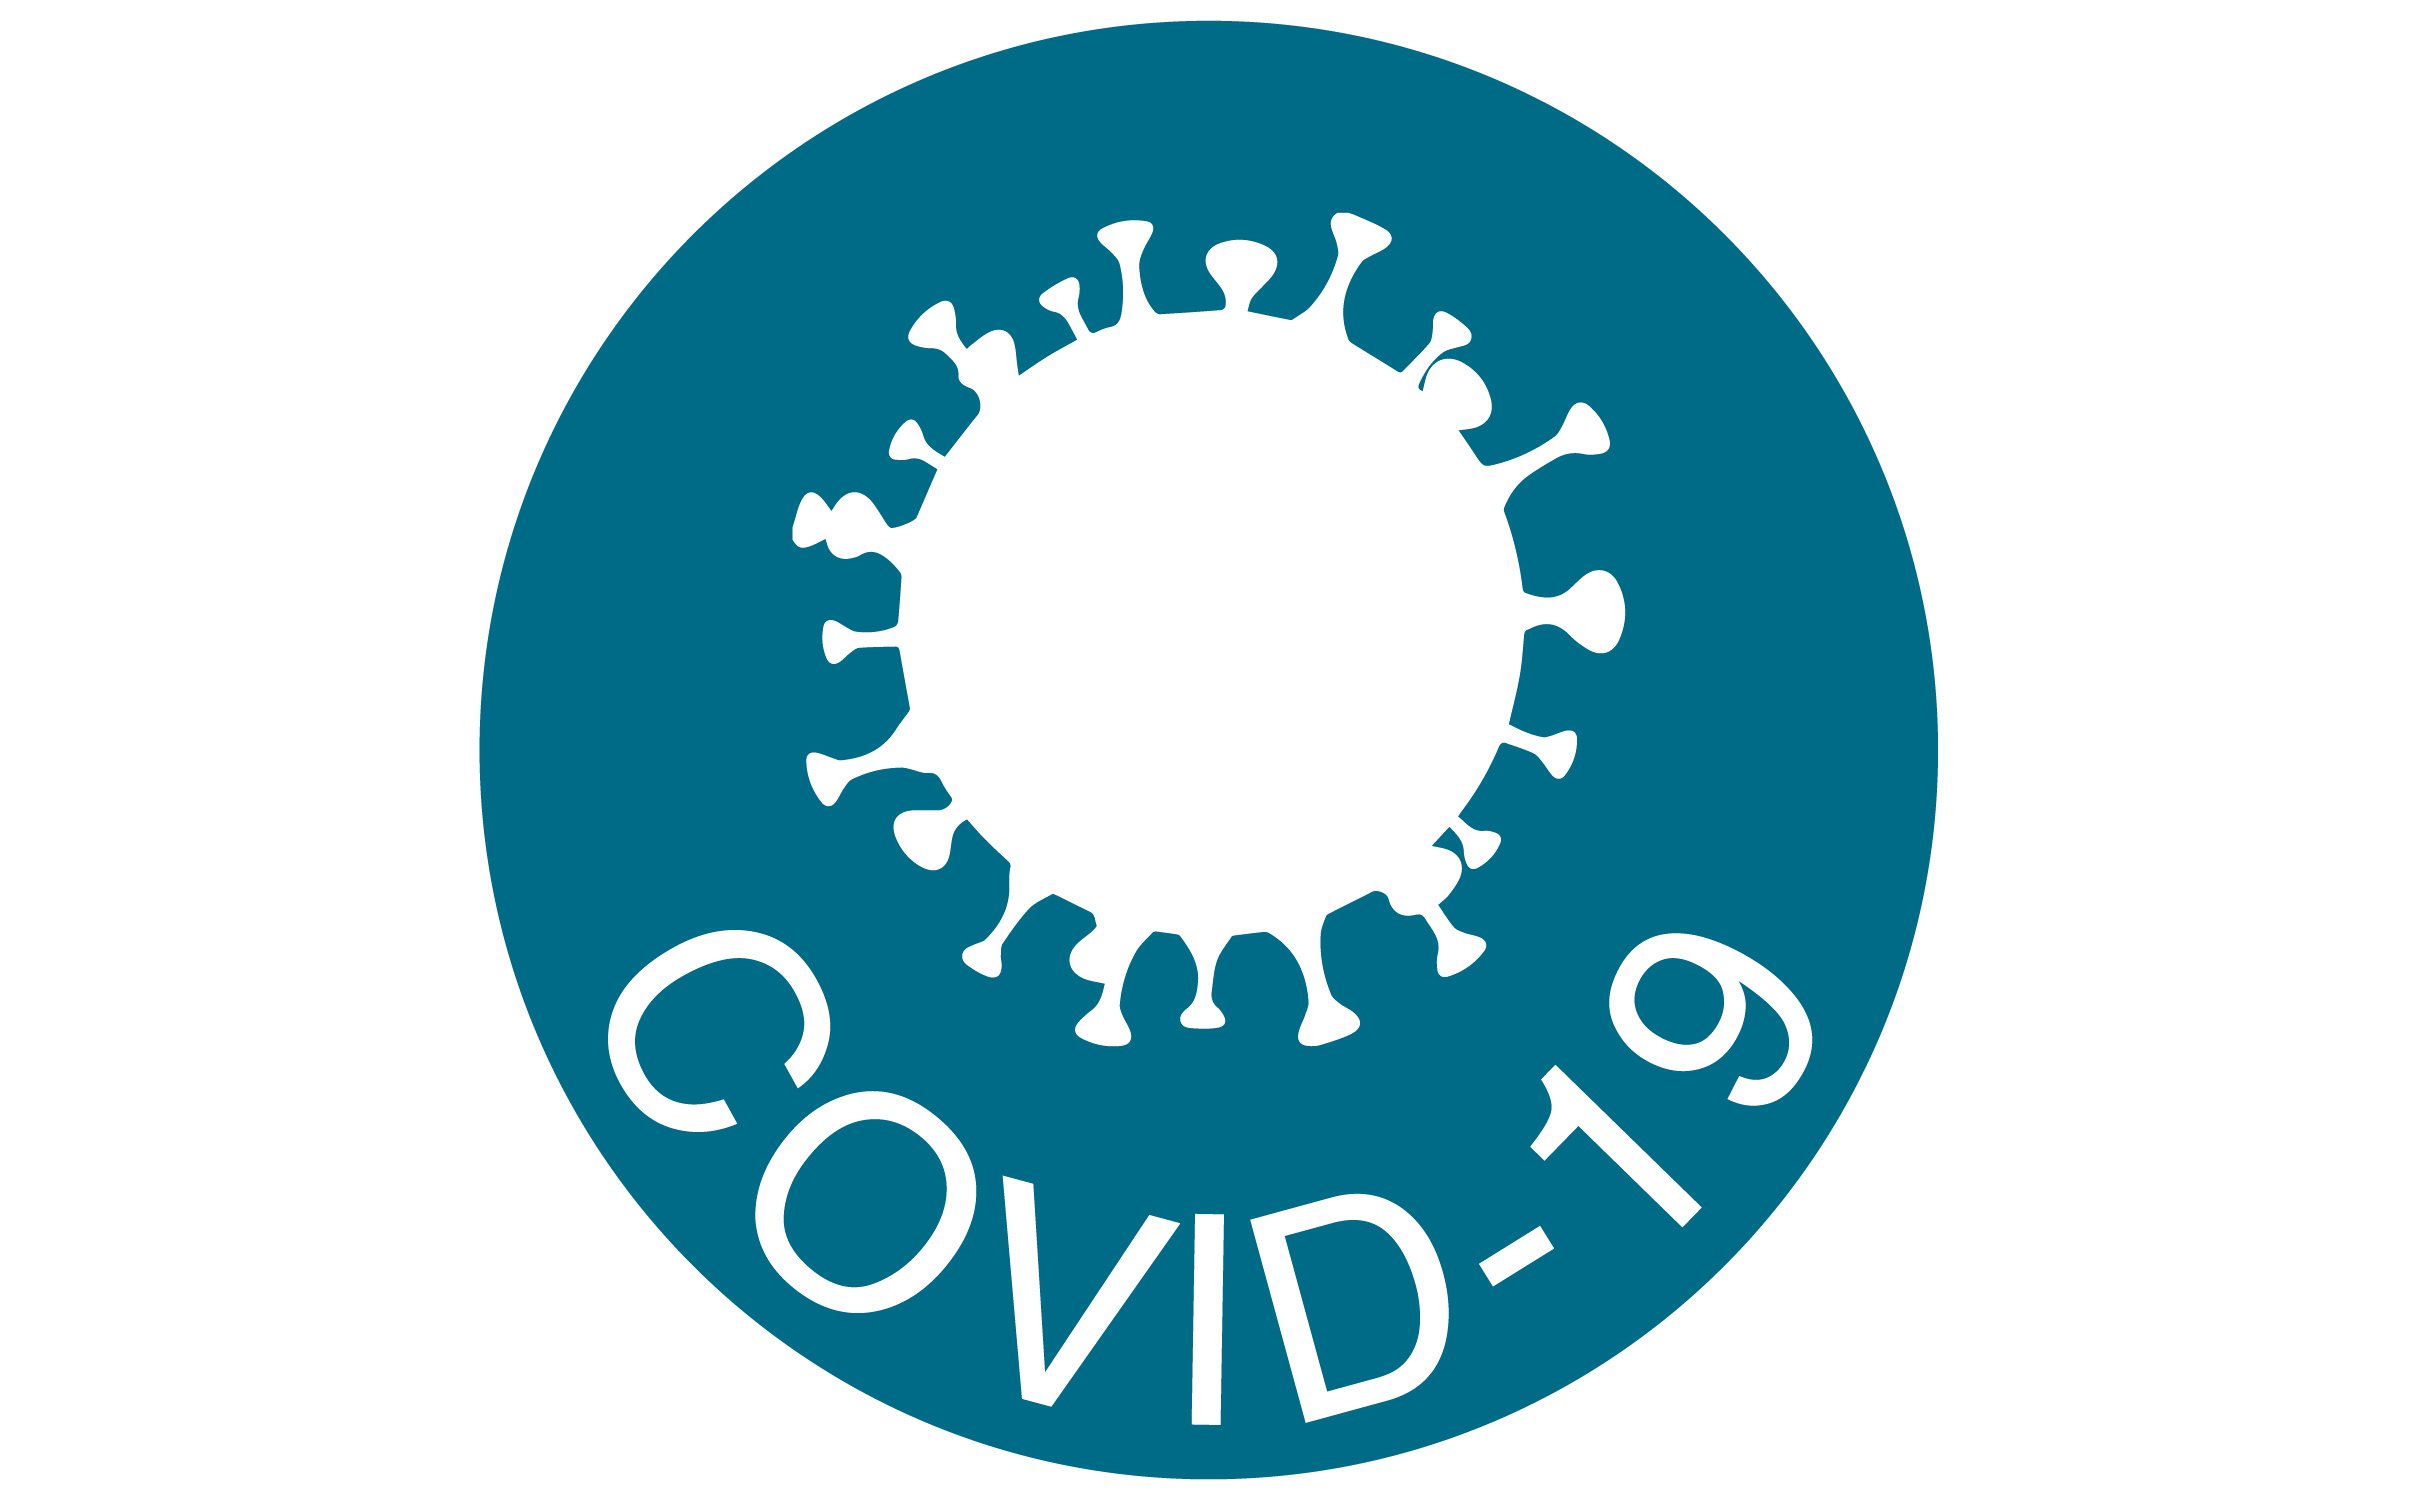 Koronawirus (COVID-19